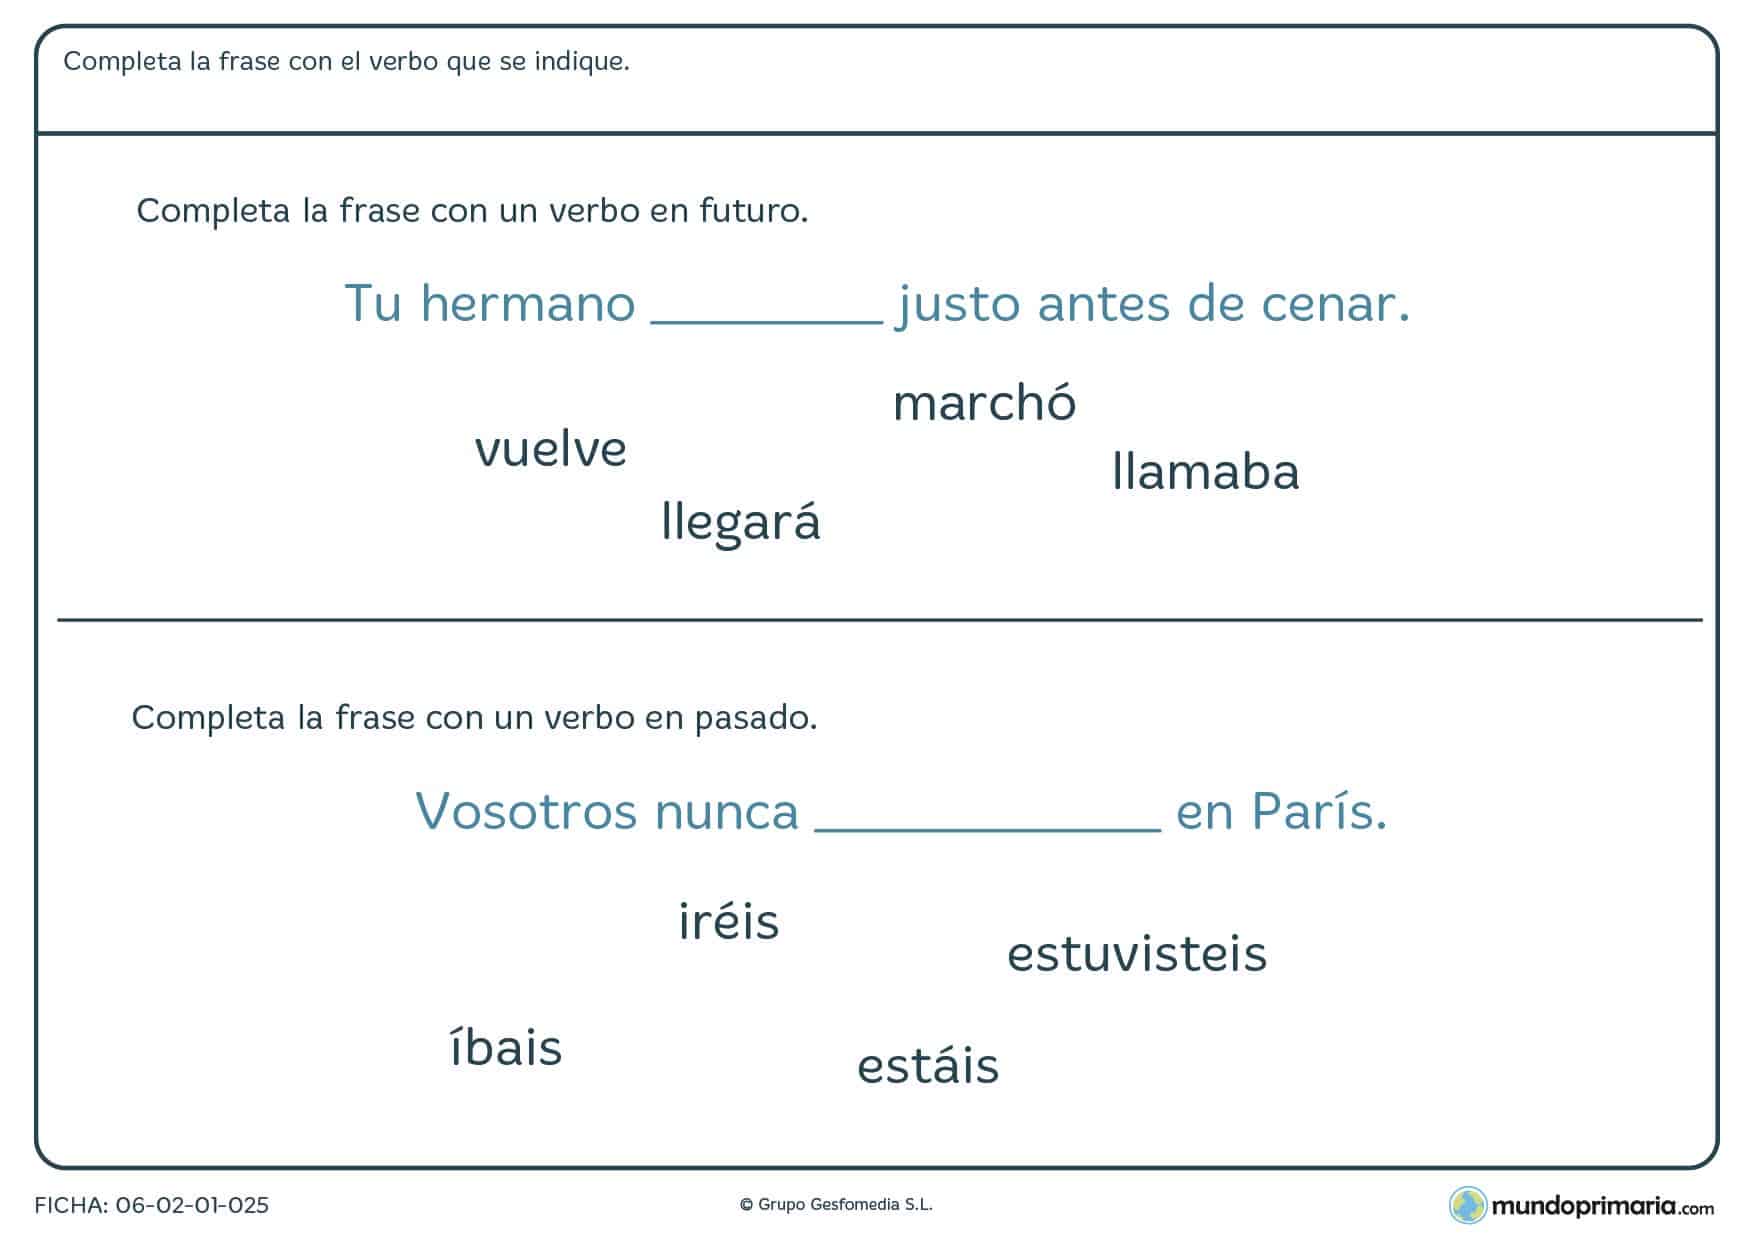 Ficha de verbos en pasado y futuro introducidos en frases para 4º